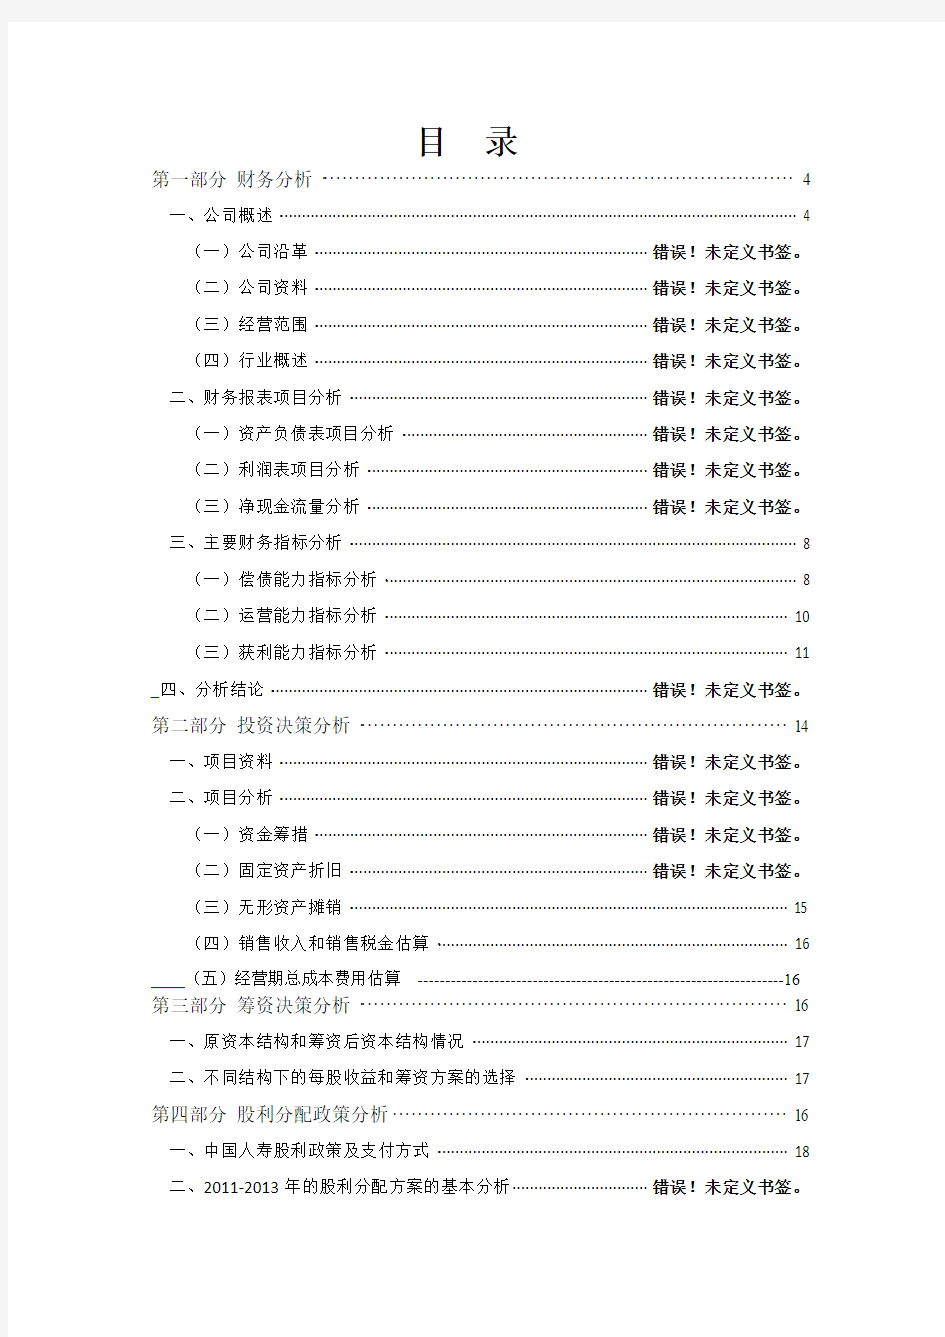 财务管理课程设计-中国人寿-12财管六班-贺含诗